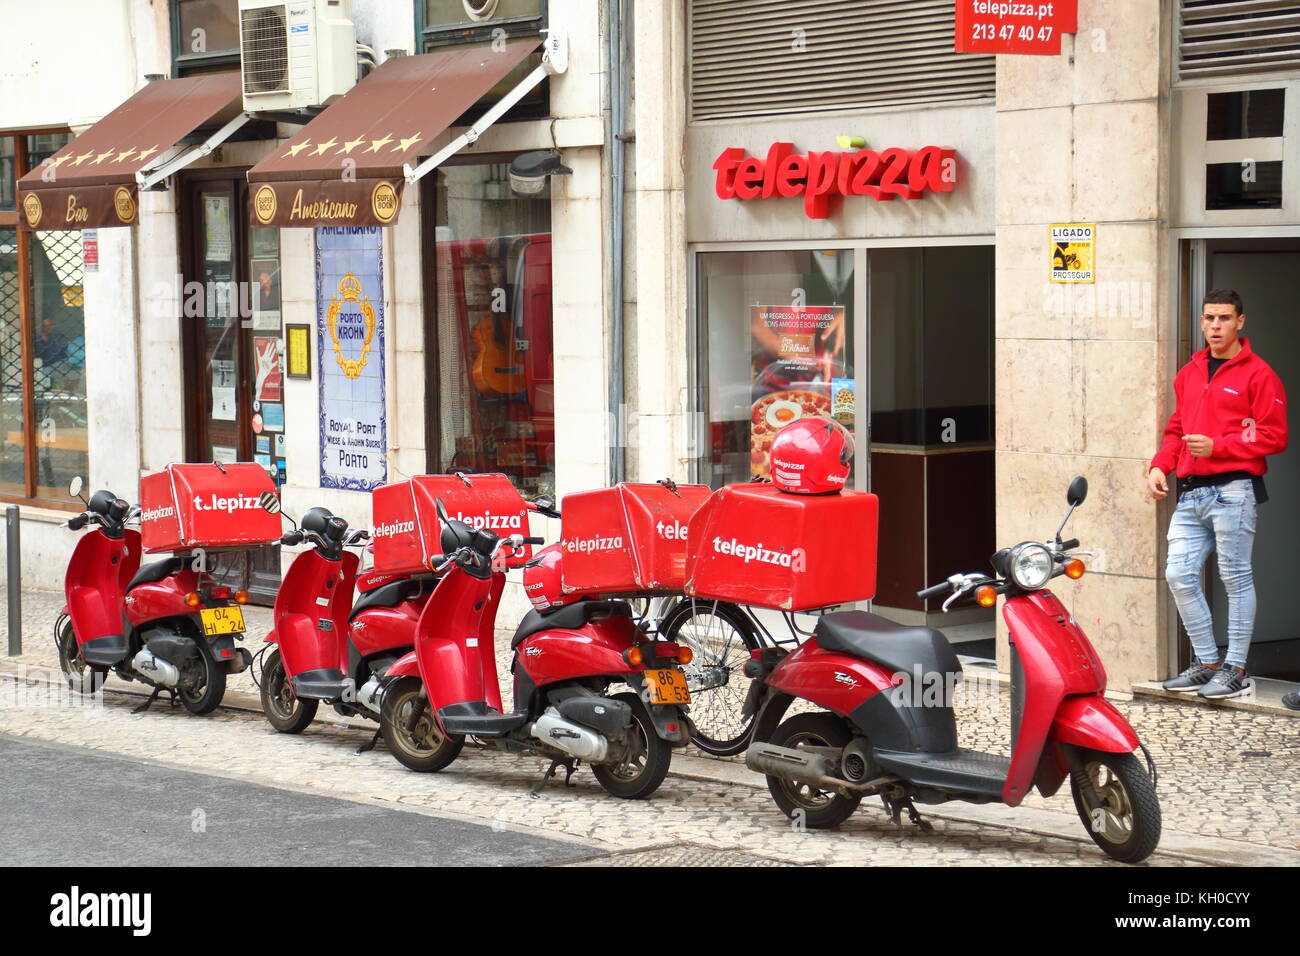 Telepizza pizza delivery service in Lisbon, Portugal Stock Photo